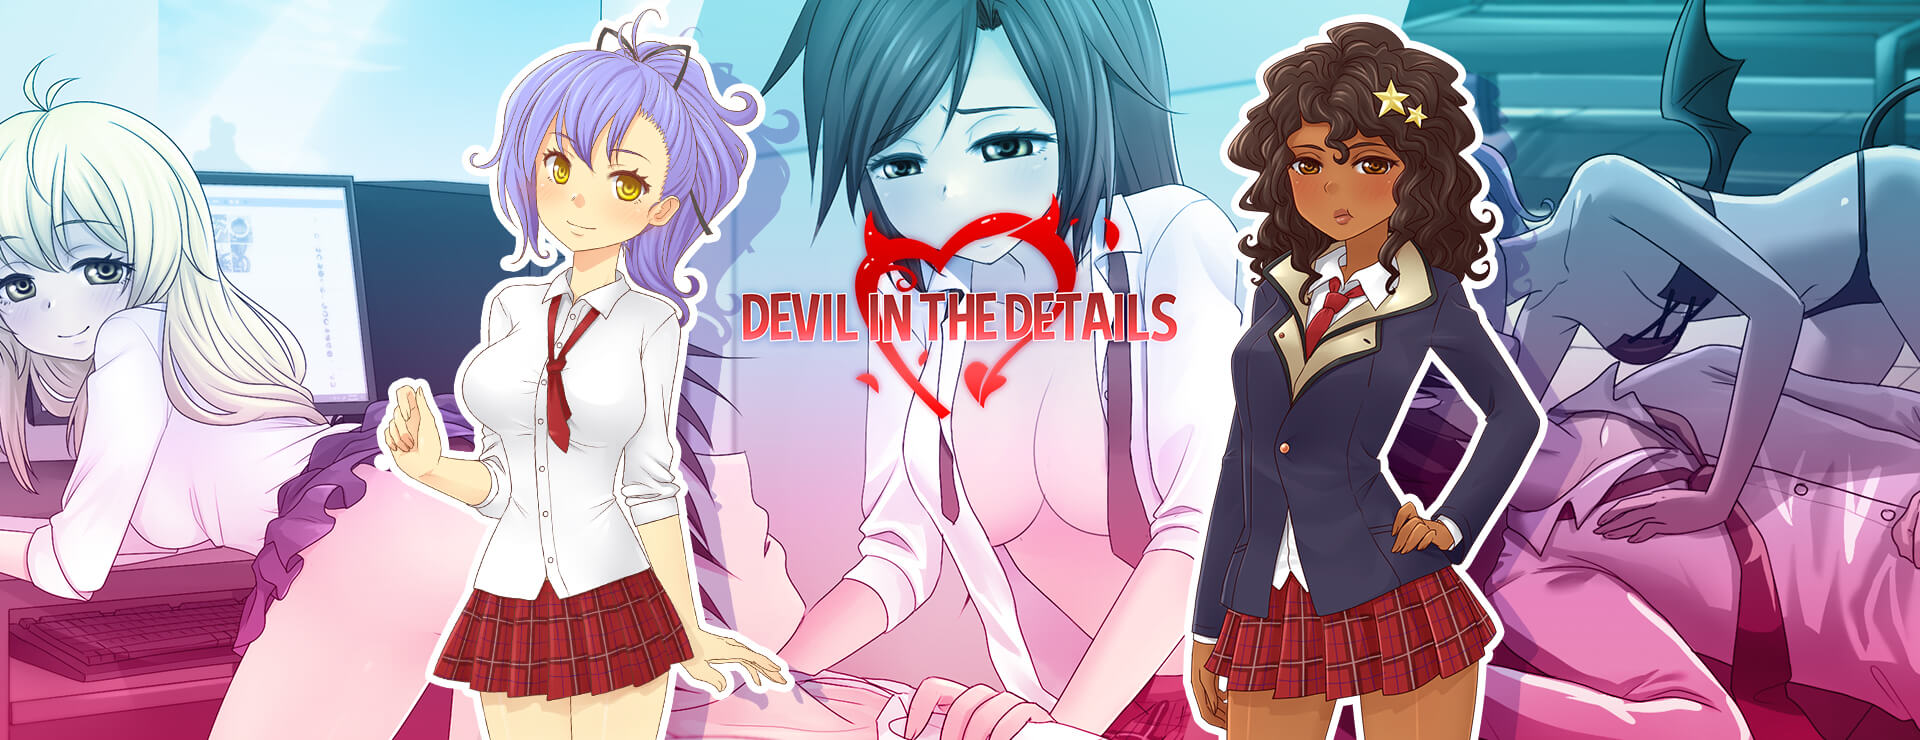 Devil in the Details - Visual Novel Game